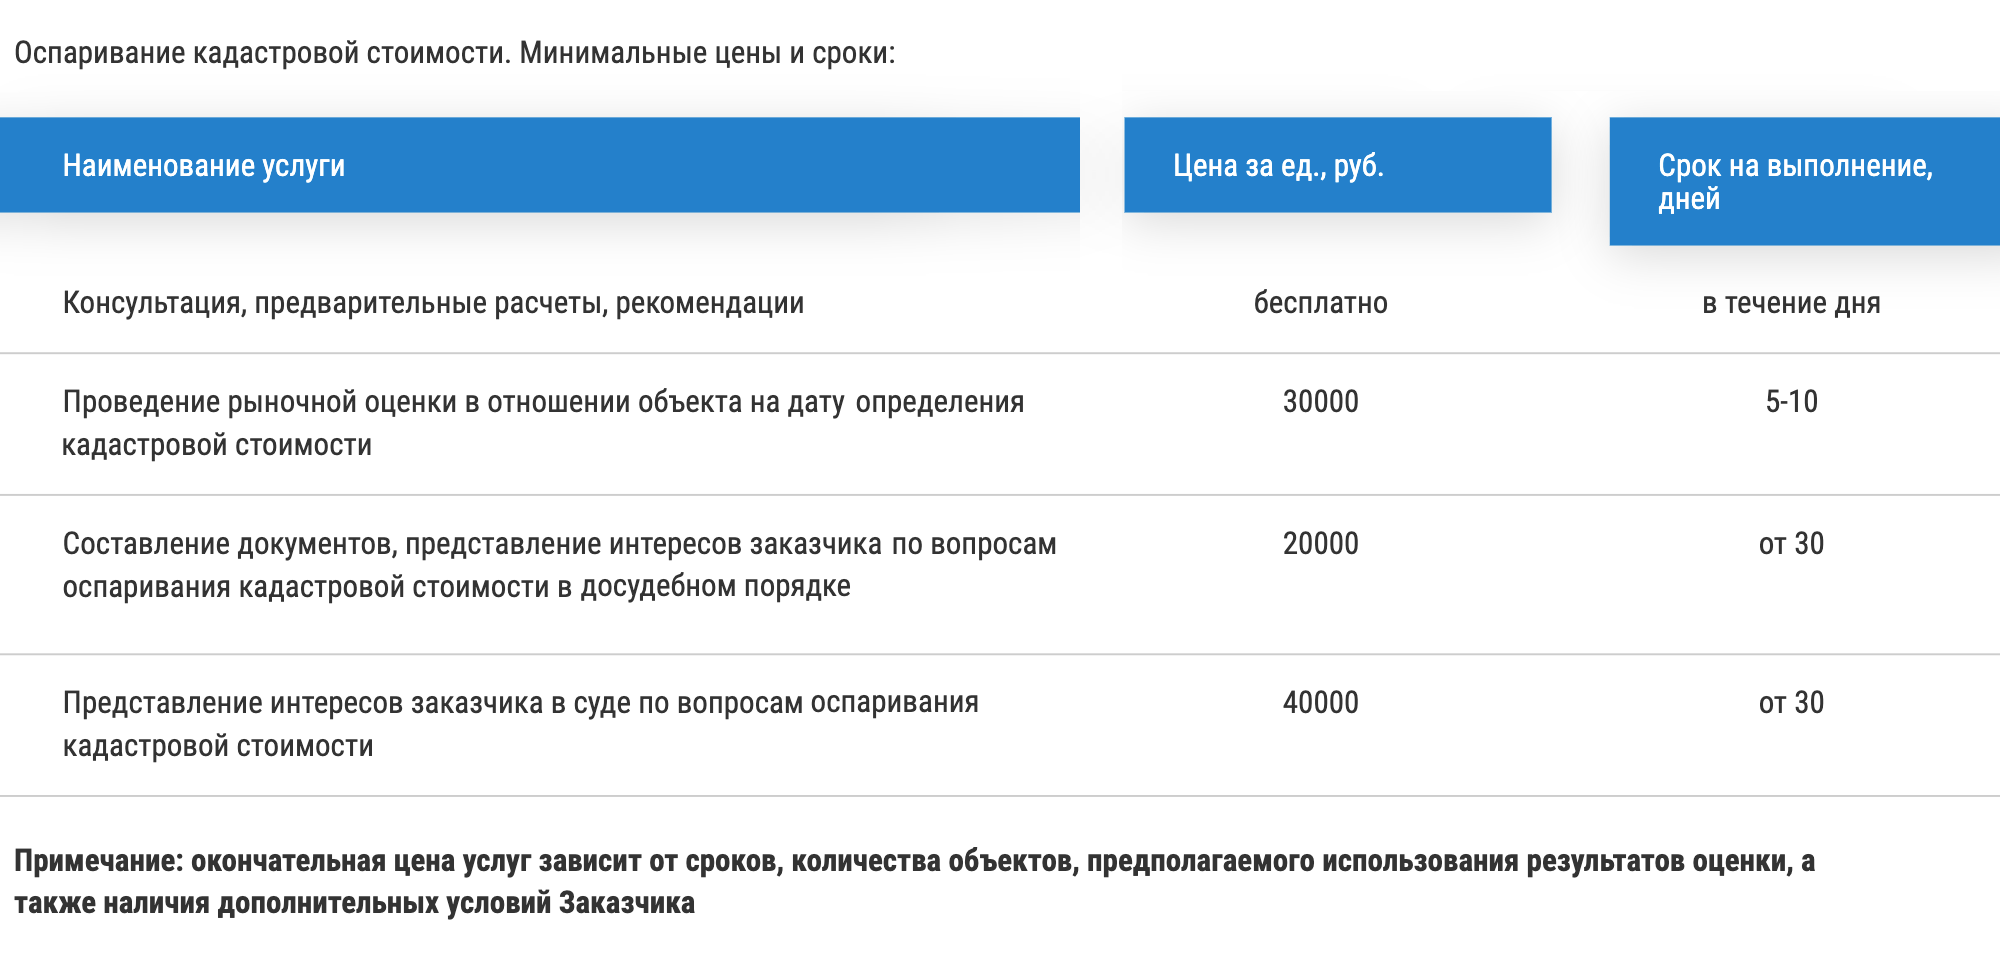 В Санкт-Петербурге и Ленобласти оценка объекта для оспаривания кадастровой стоимости стоит от 30 000 ₽